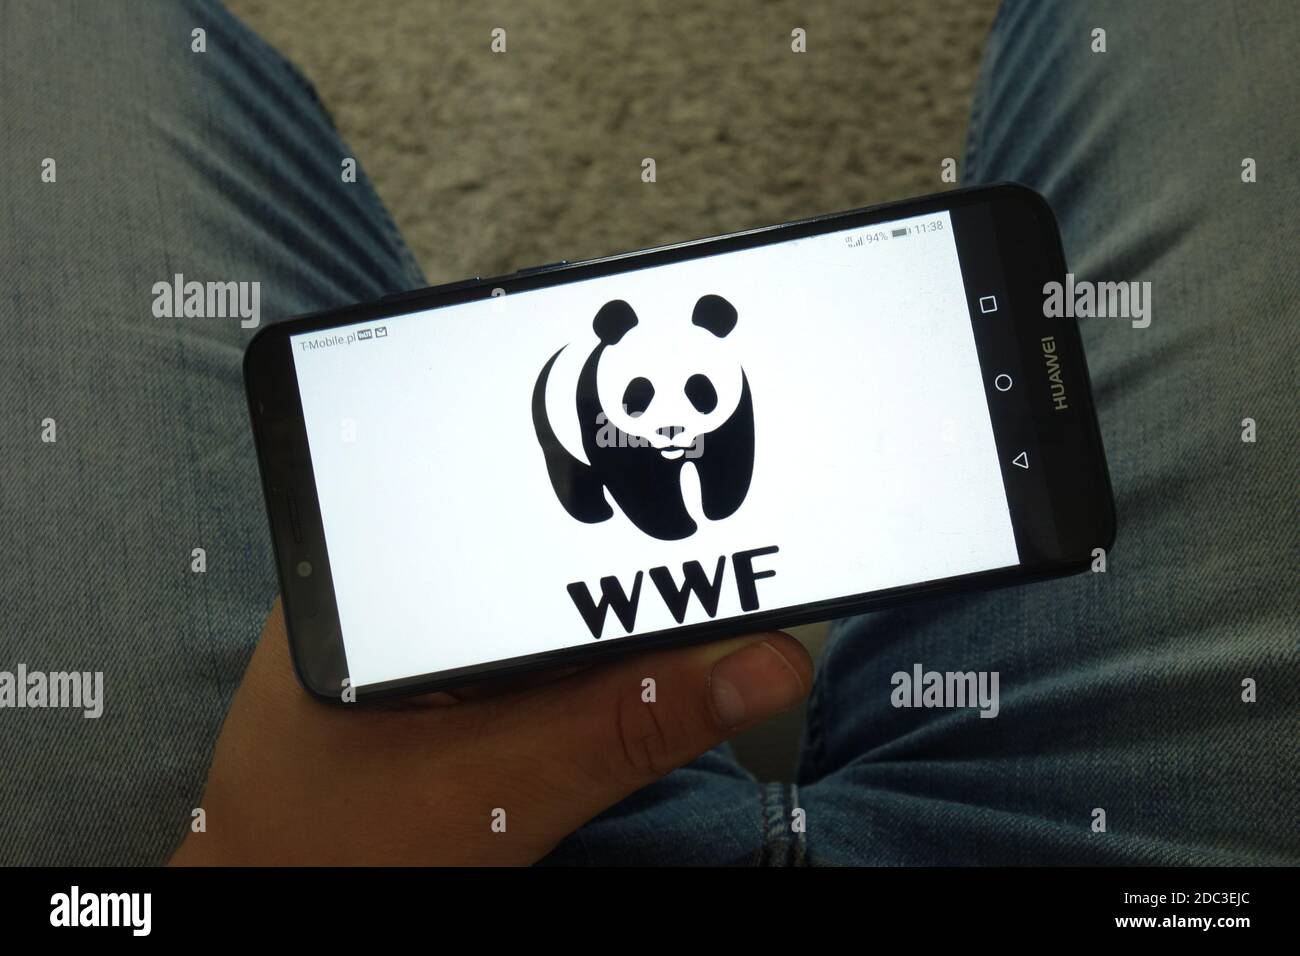 KONSKIE, POLEN - 29. Juni 2019: World Wide Fund for Nature - WWF-Logo auf Handy angezeigt Stockfoto